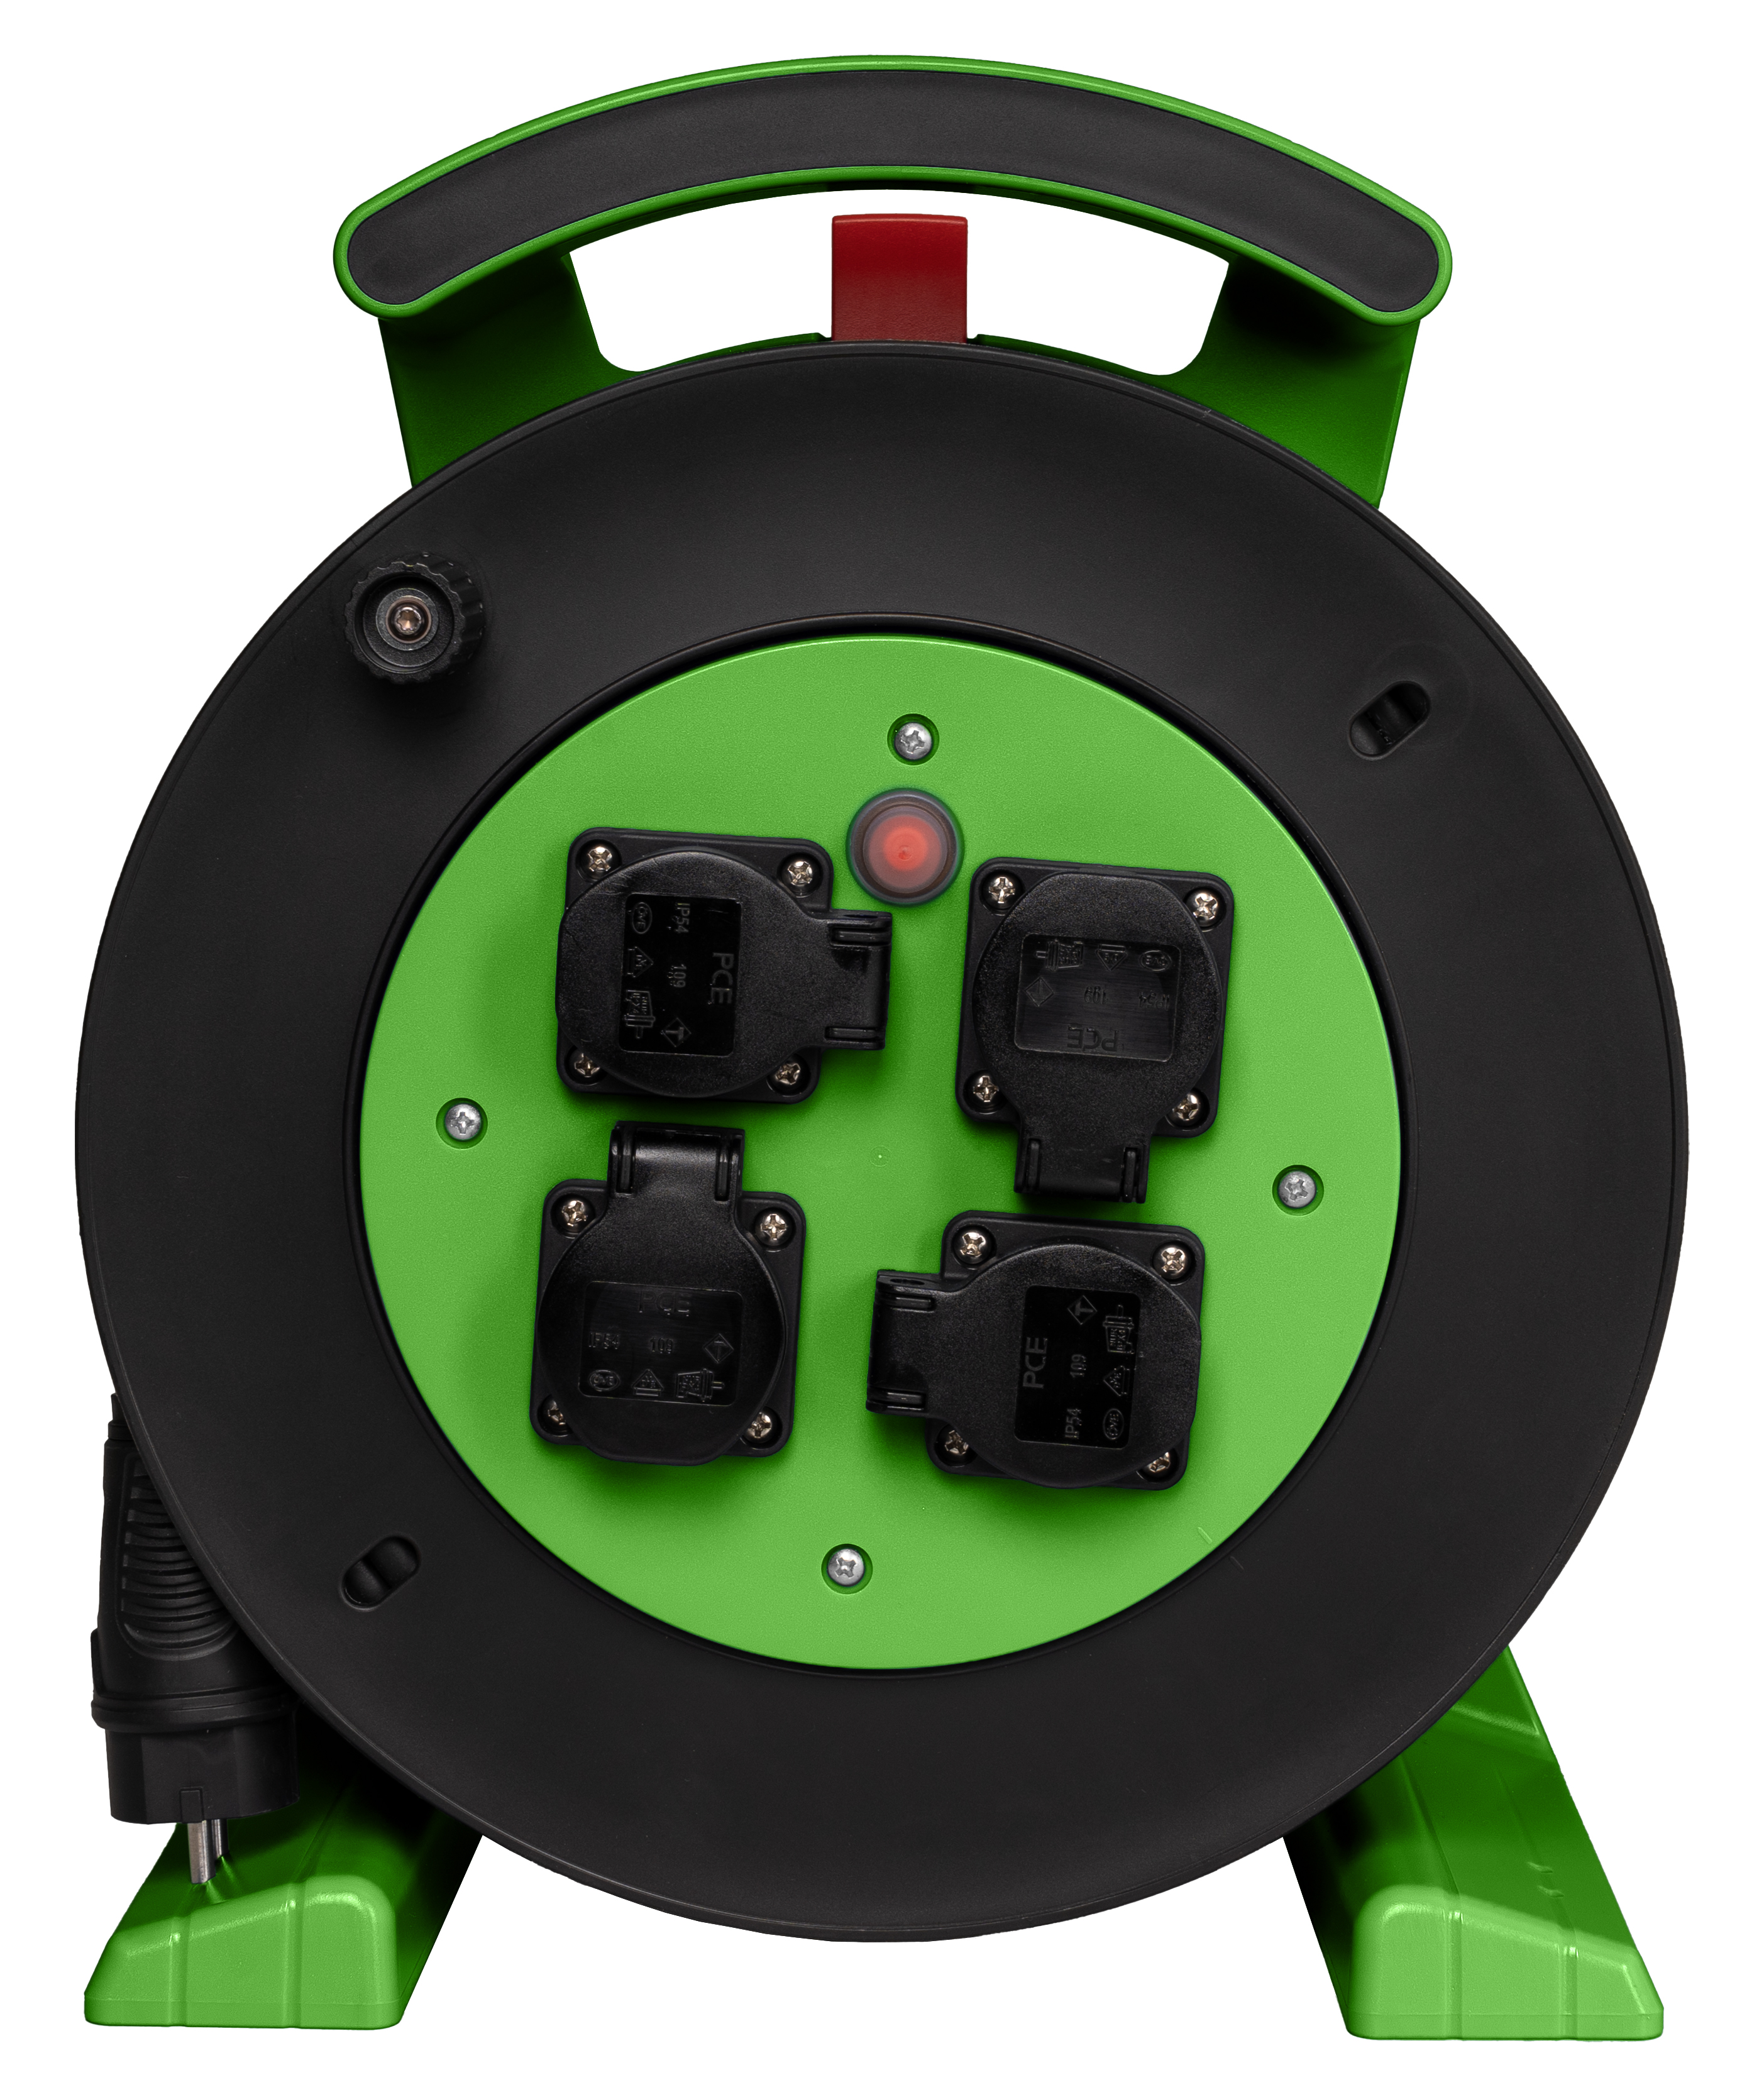 Kabeltrommel grün-schwarz, 4 x Schutzkontakt-Steckdose, H07RN-F 3 G 1,5 mm², 40 m JUMBO L 2.0